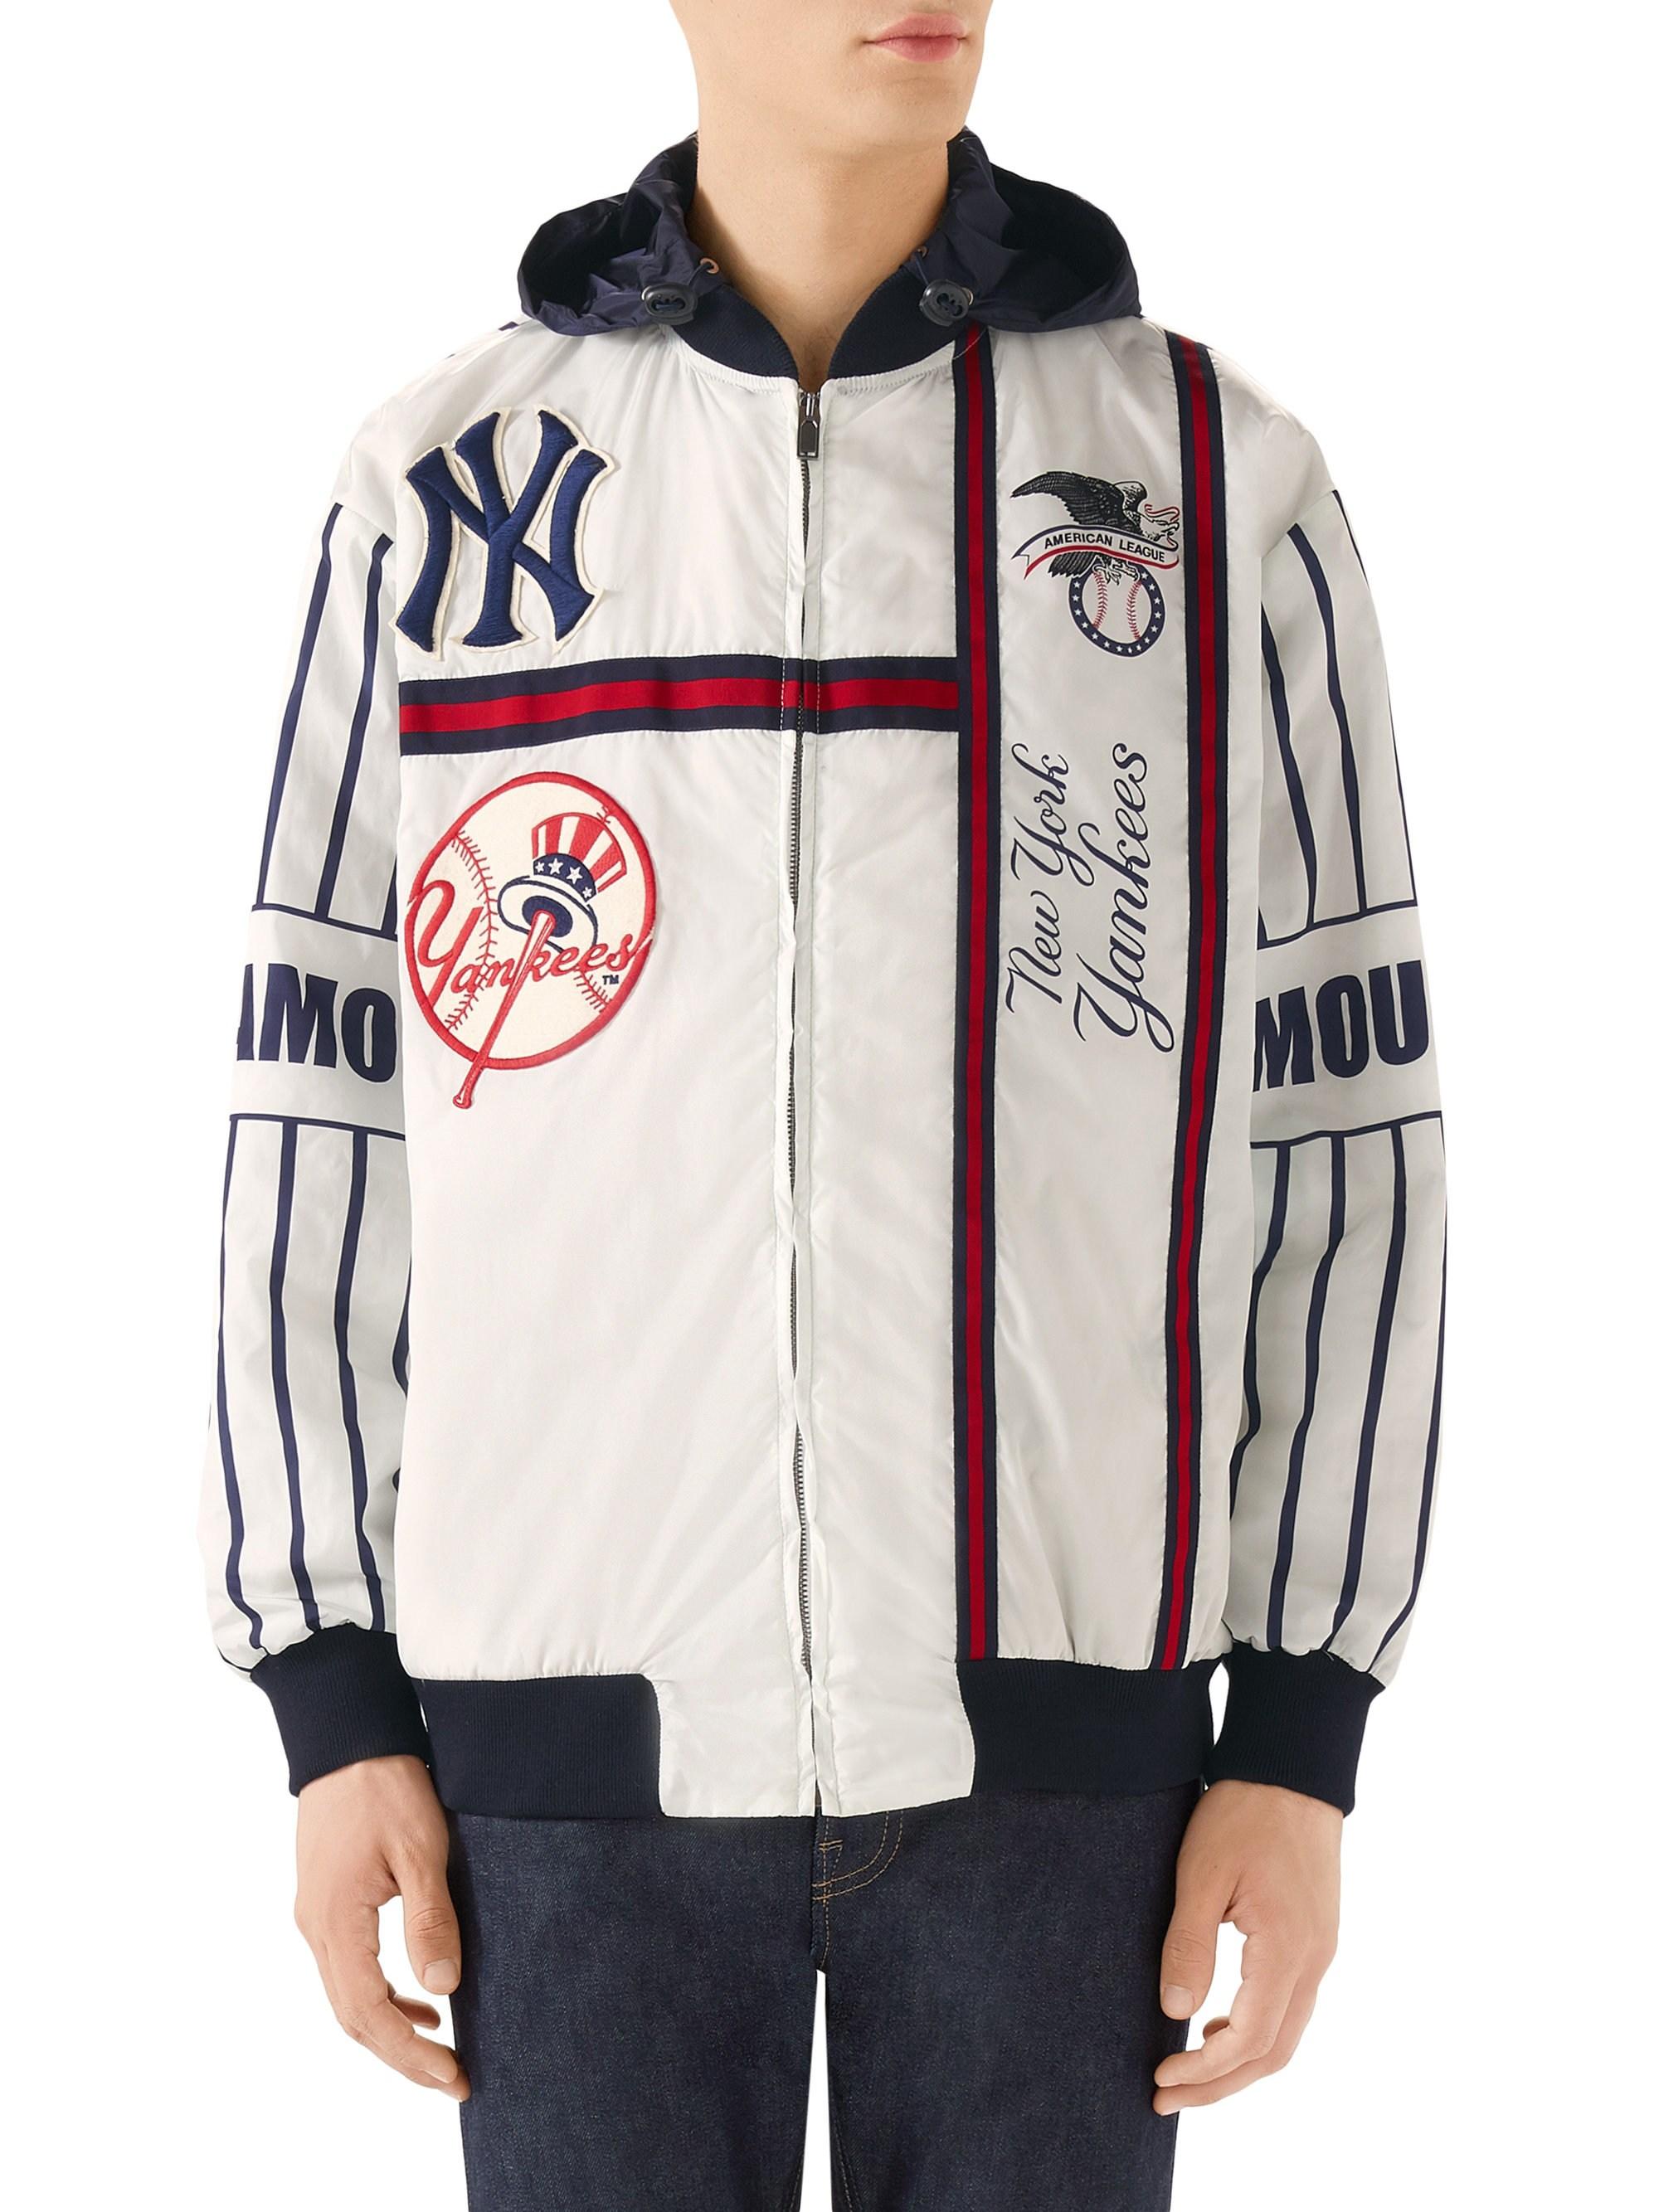 Gucci Men's New York Yankees Striped Bomber Jacket - White for Men